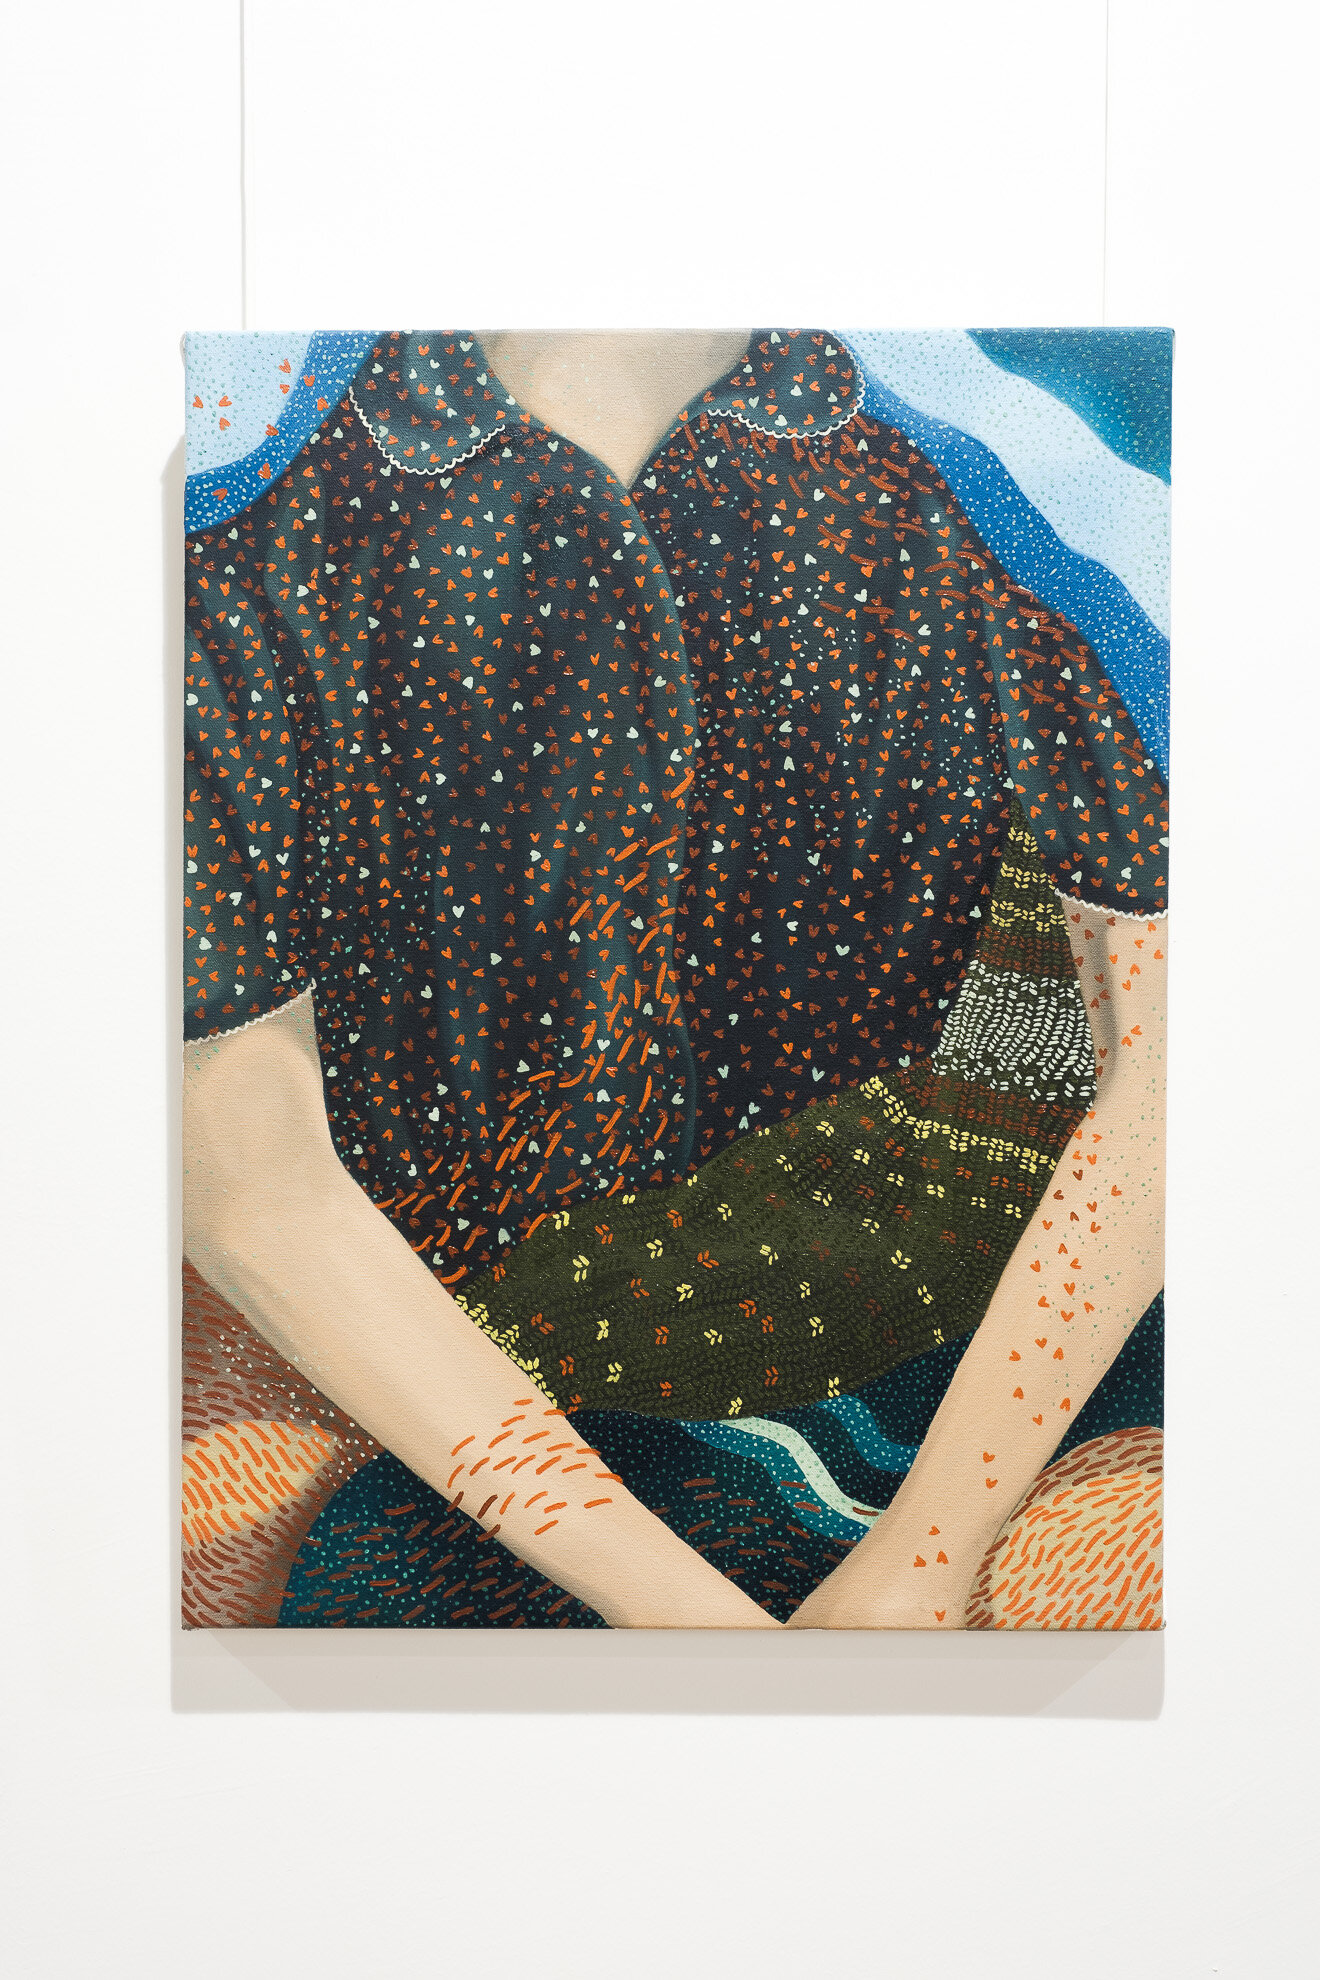   Marti , 2019, oil on canvas, 46 x 60 cm 